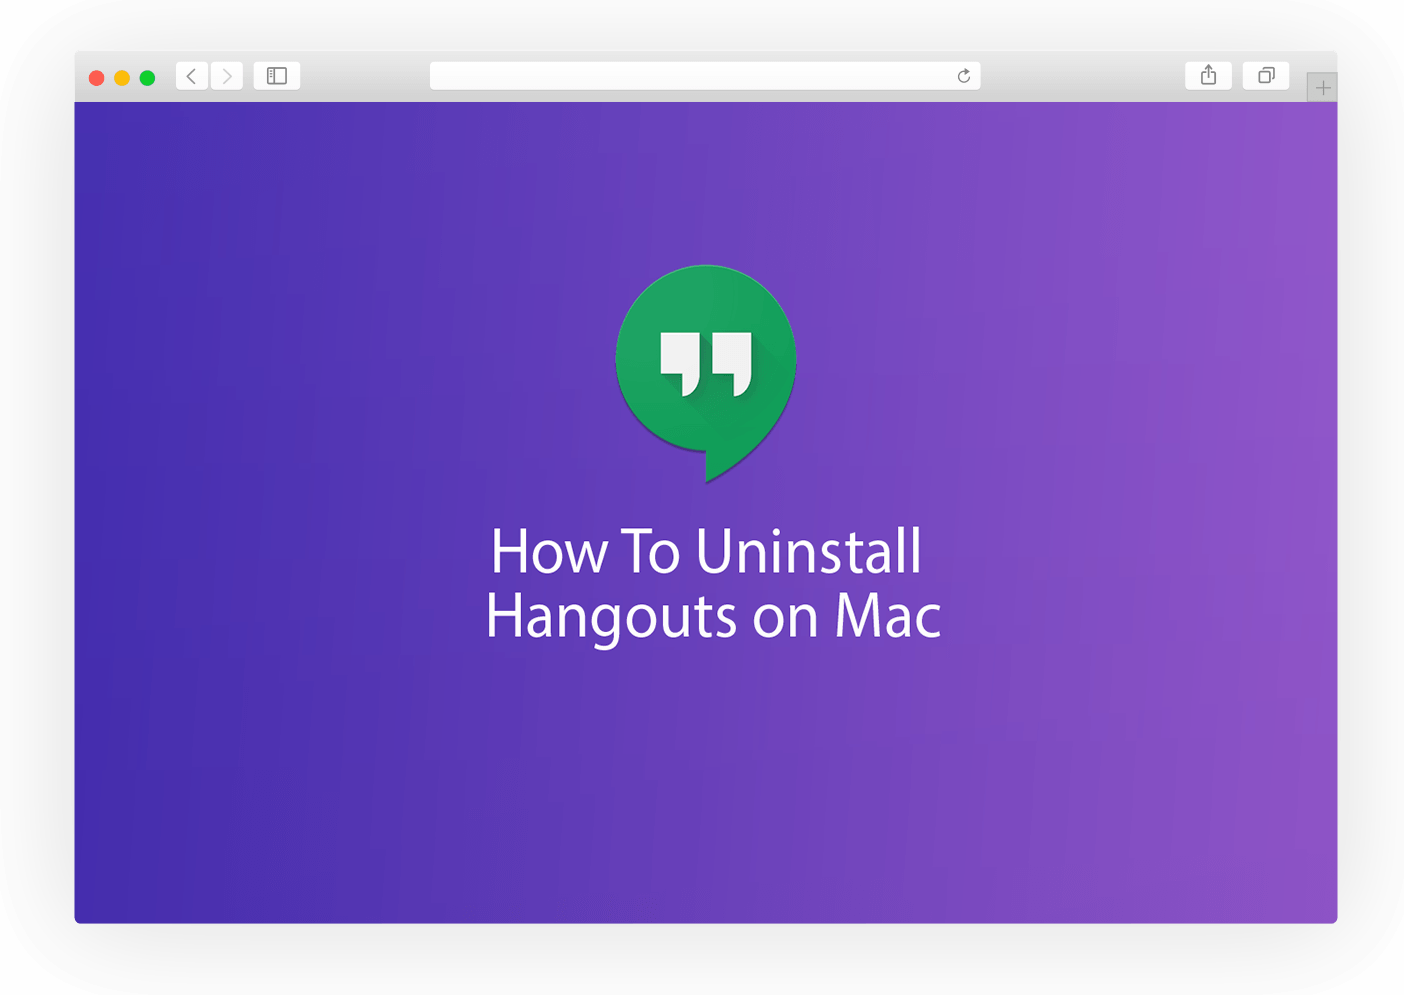 hangouts app on mac